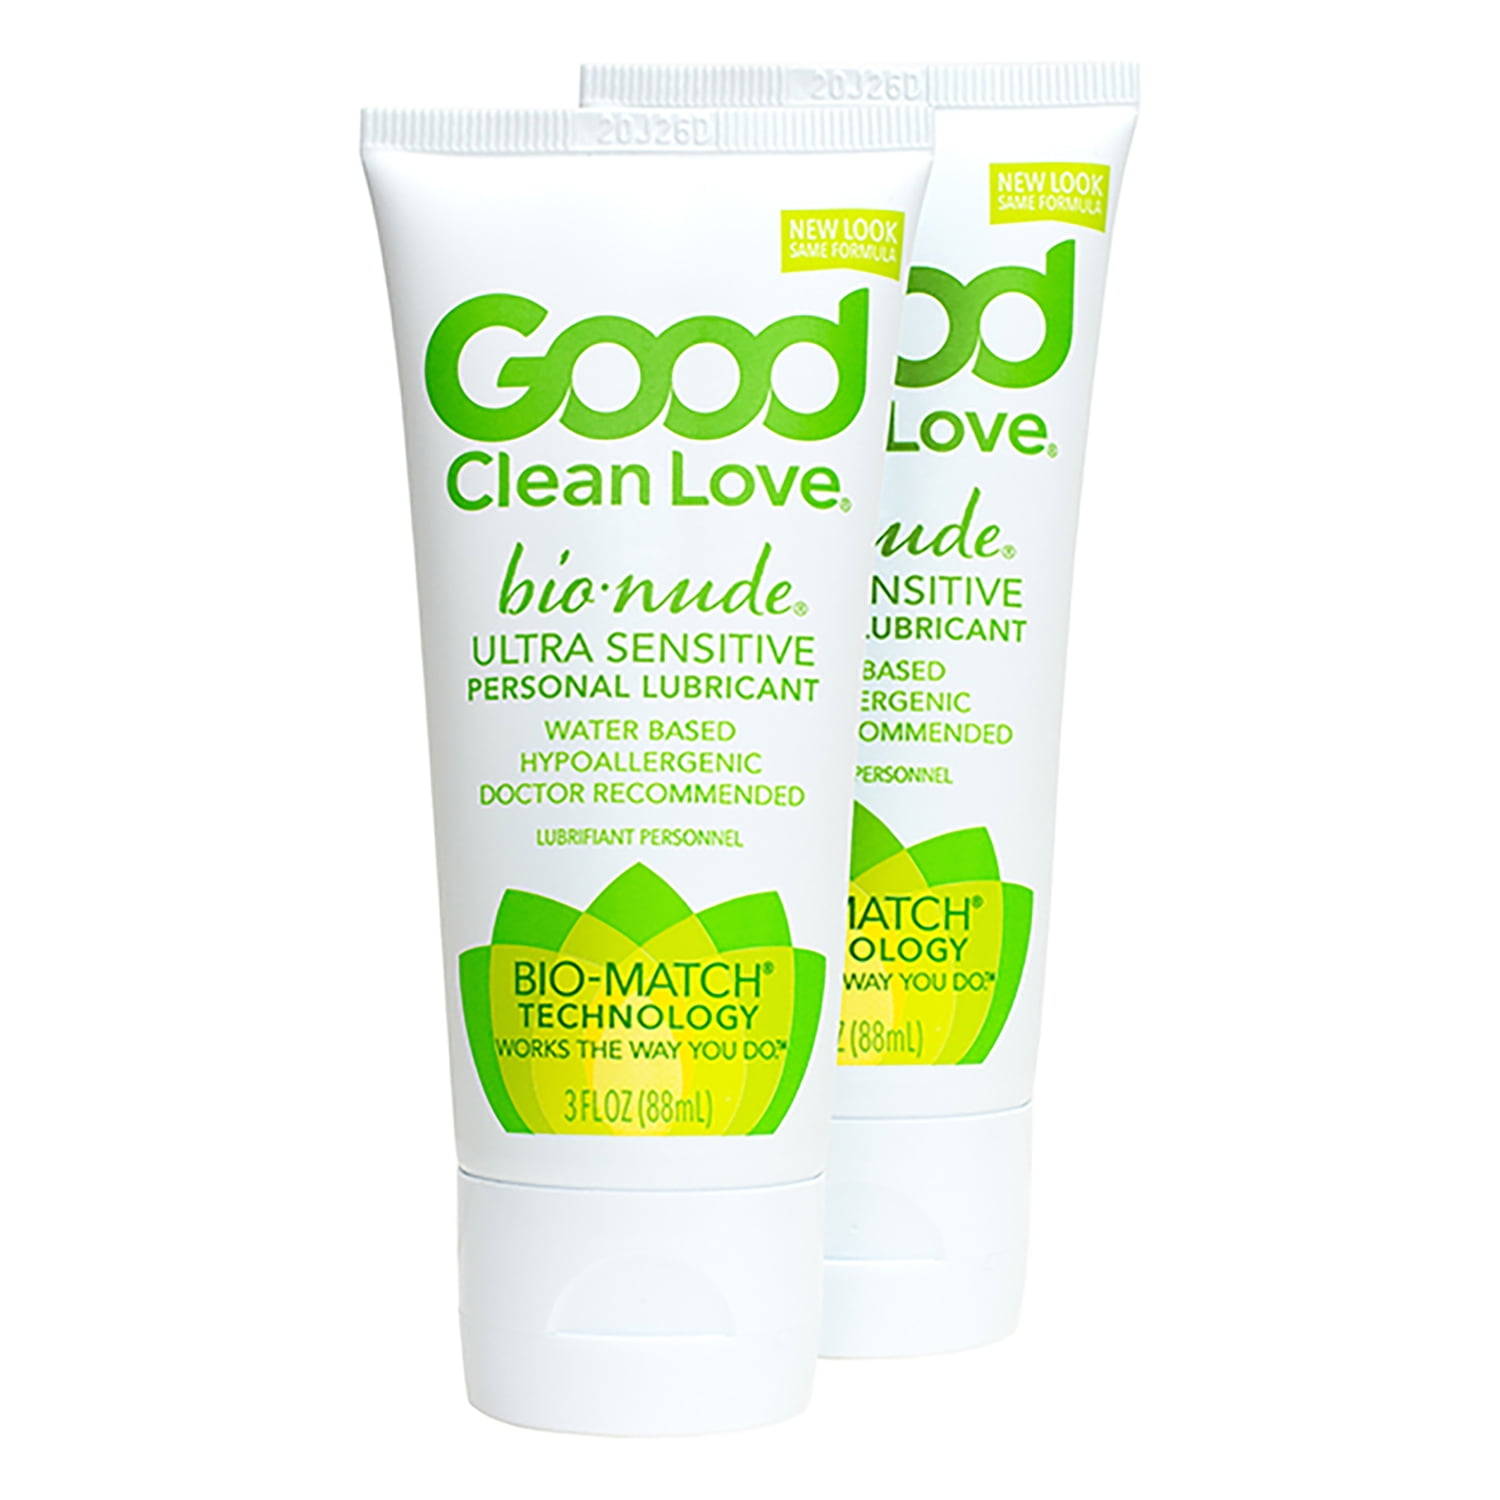 Good Clean Love - An Organic Vegan Lubricant